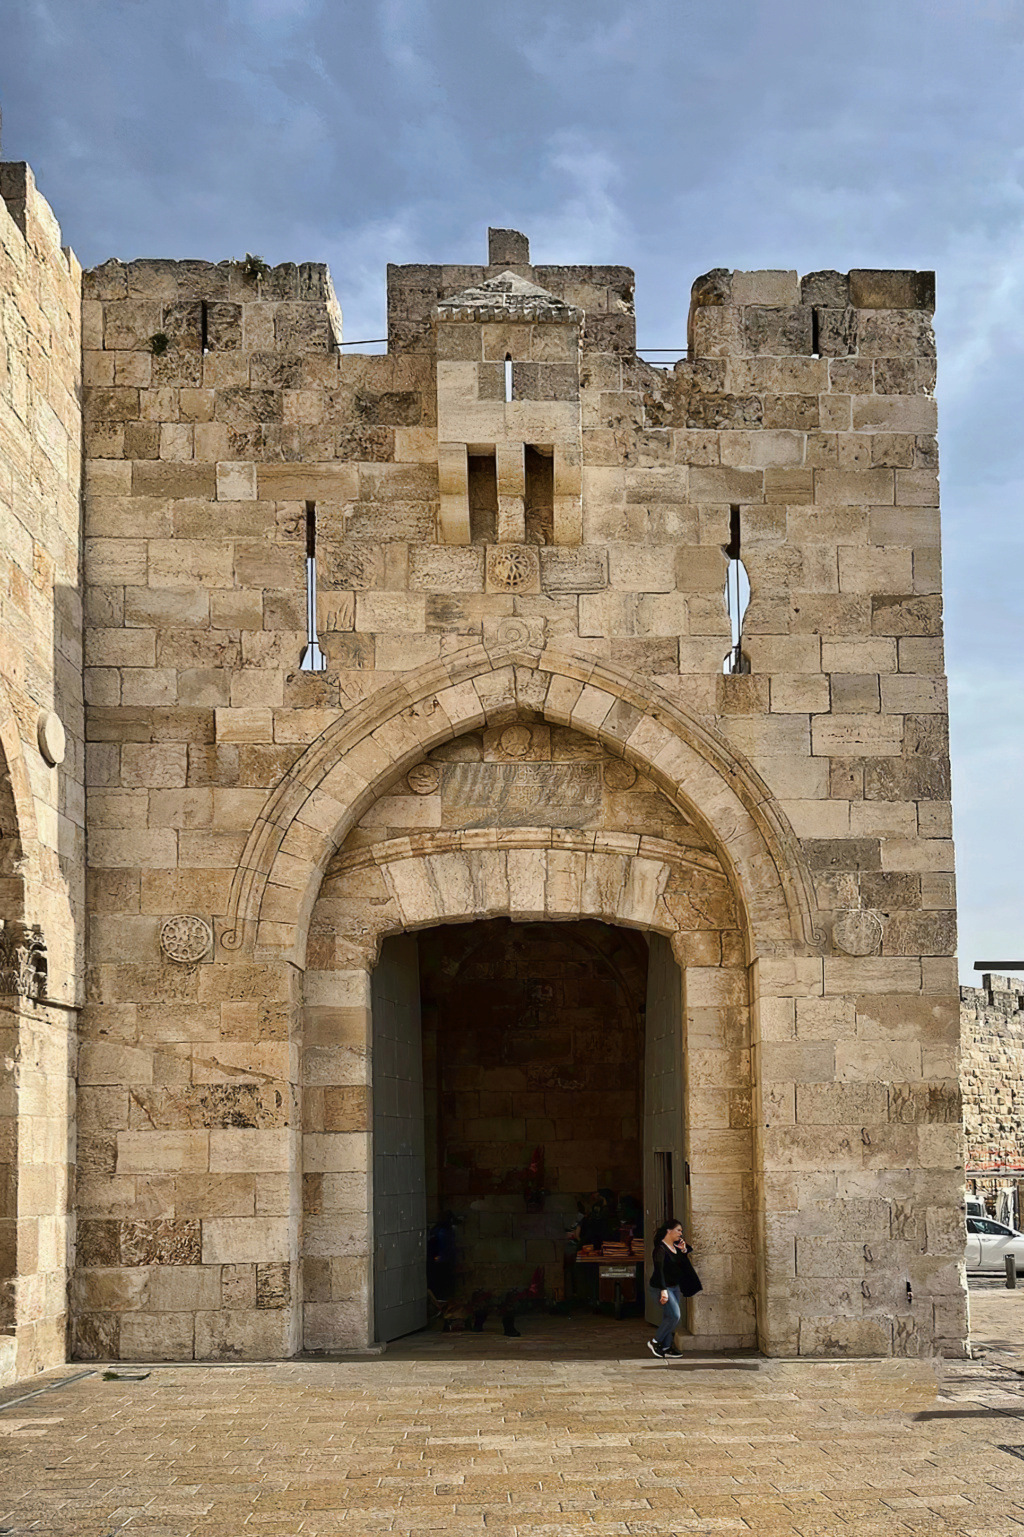 12 jours en Israêl de Tel Aviv à Acre, Capharnaum, Jéricho, Bethléem et Jérusalem - Page 2 Porte_10